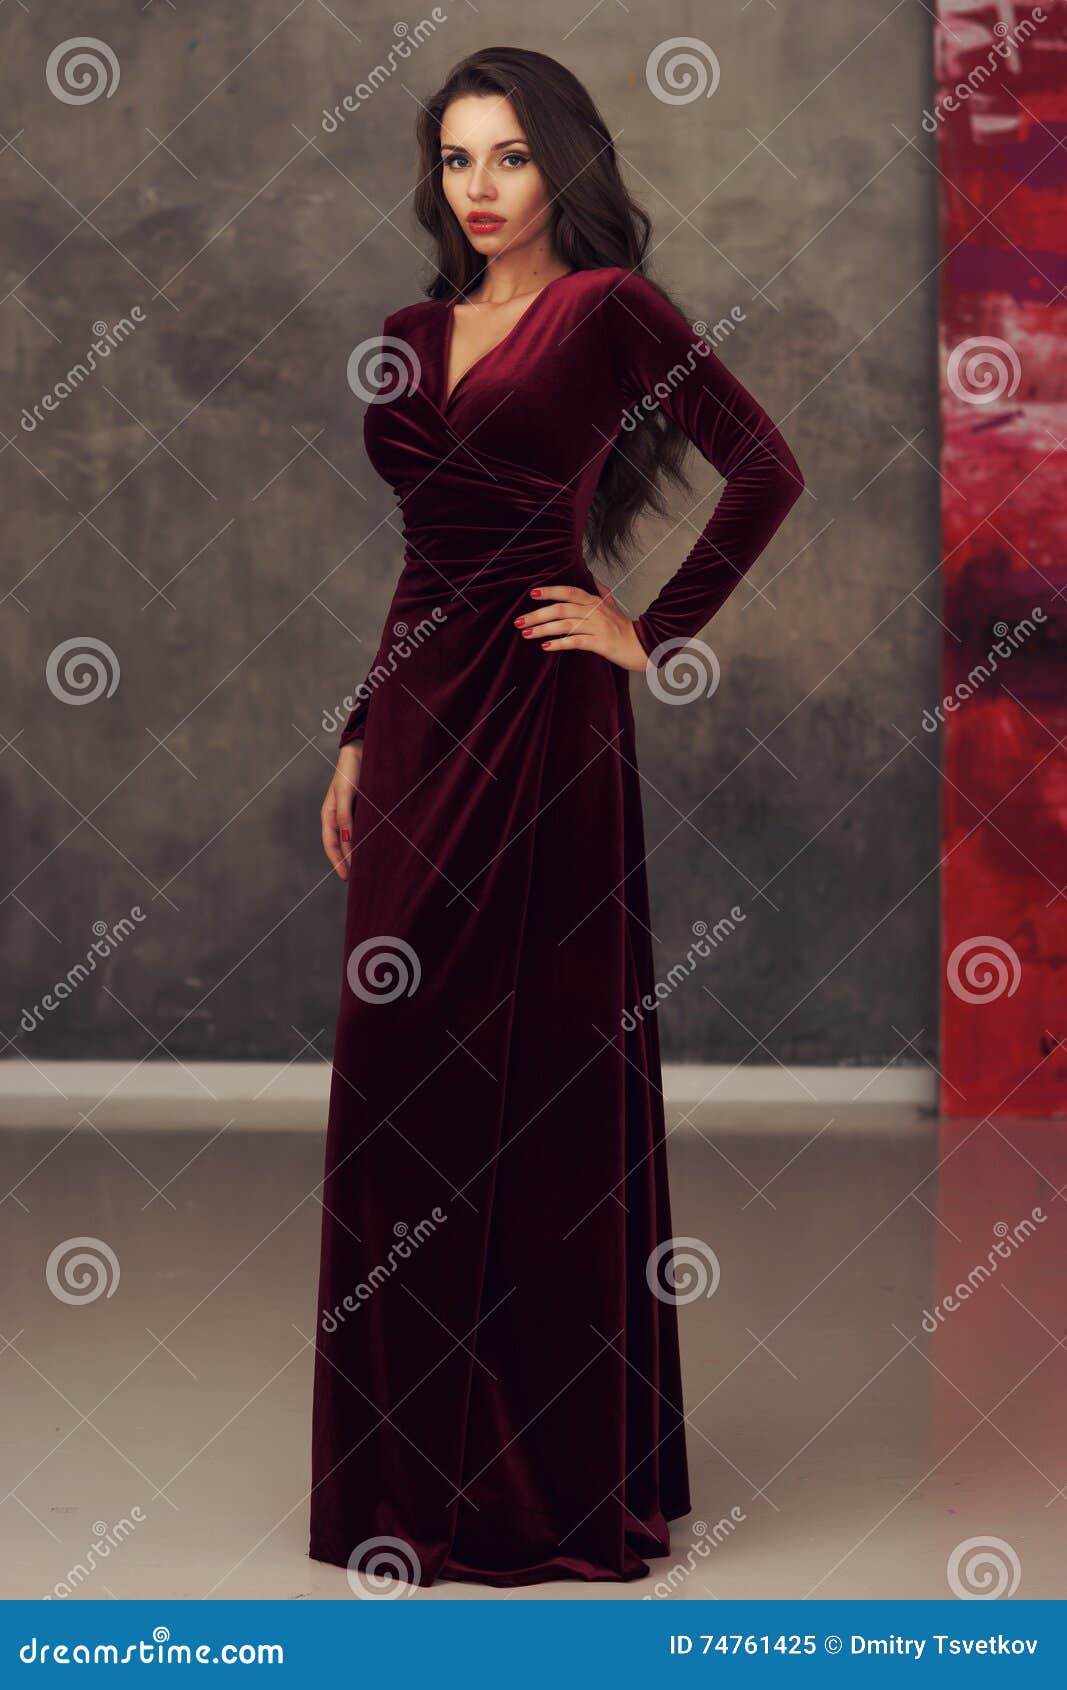 Imponente En Vestido Del Rojo Cereza Imagen de archivo - de elegante: